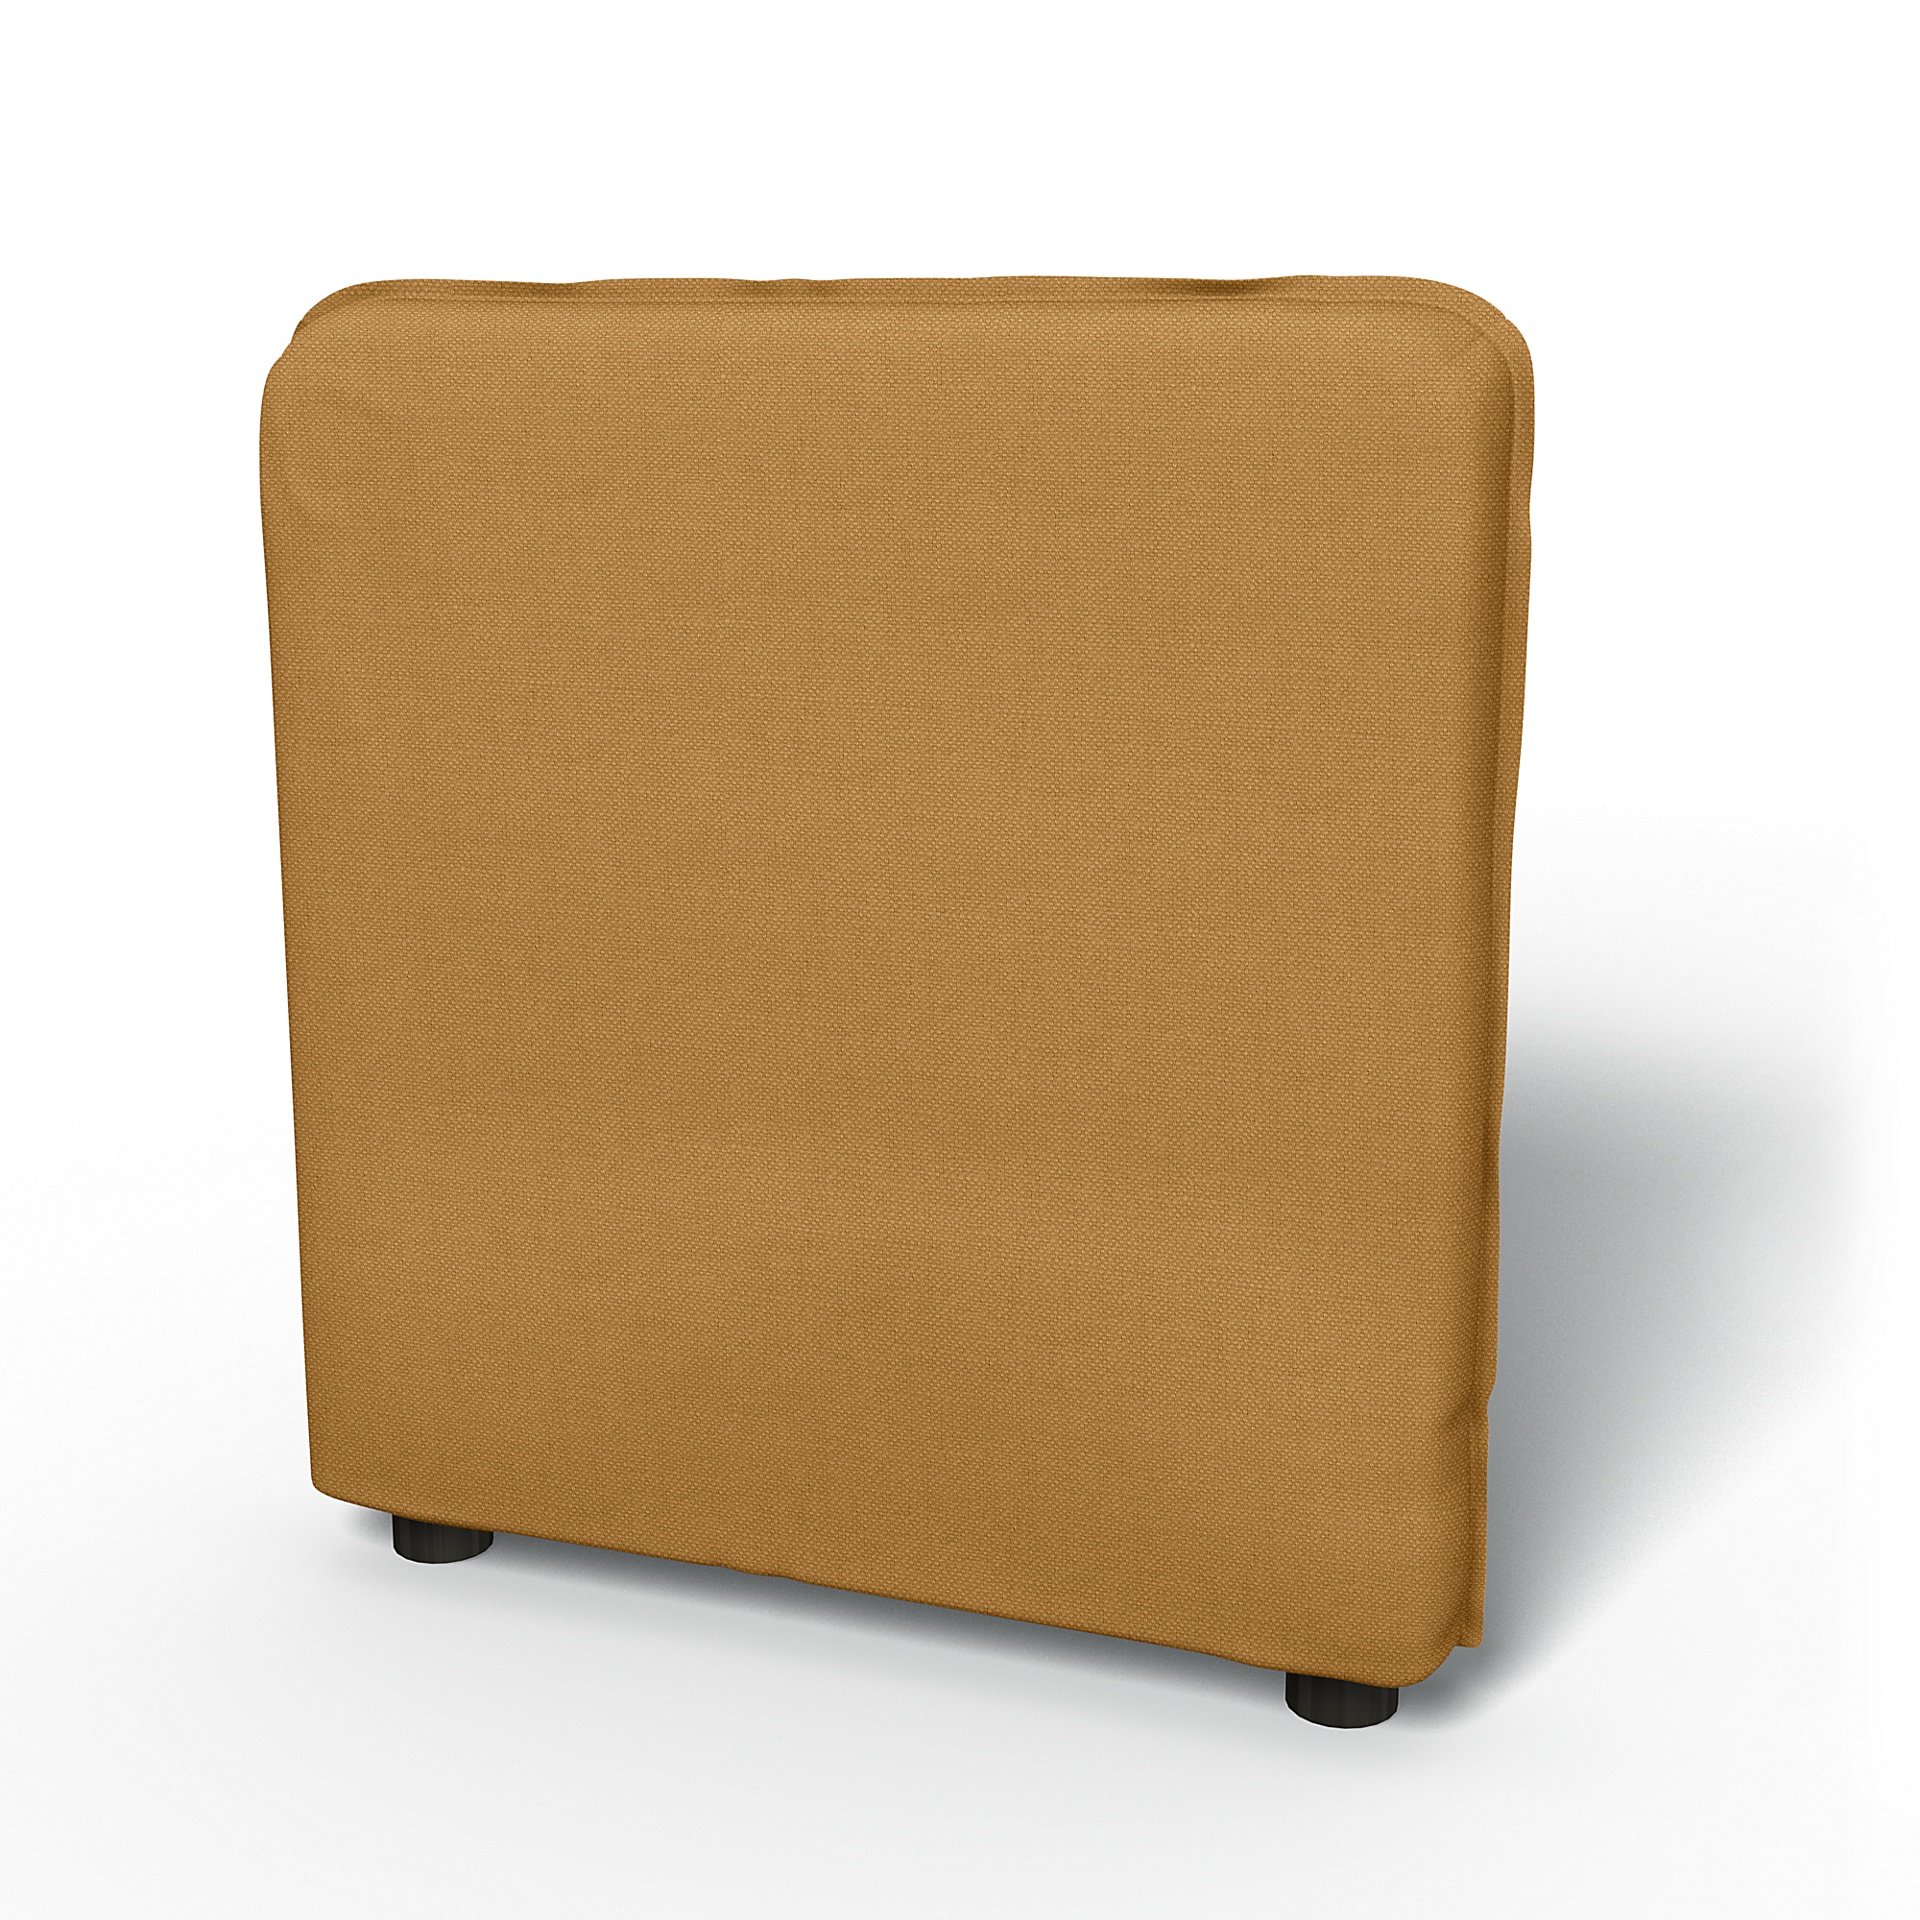 IKEA - Vallentuna Armrest Cover (80x60x13cm), Mustard, Linen - Bemz